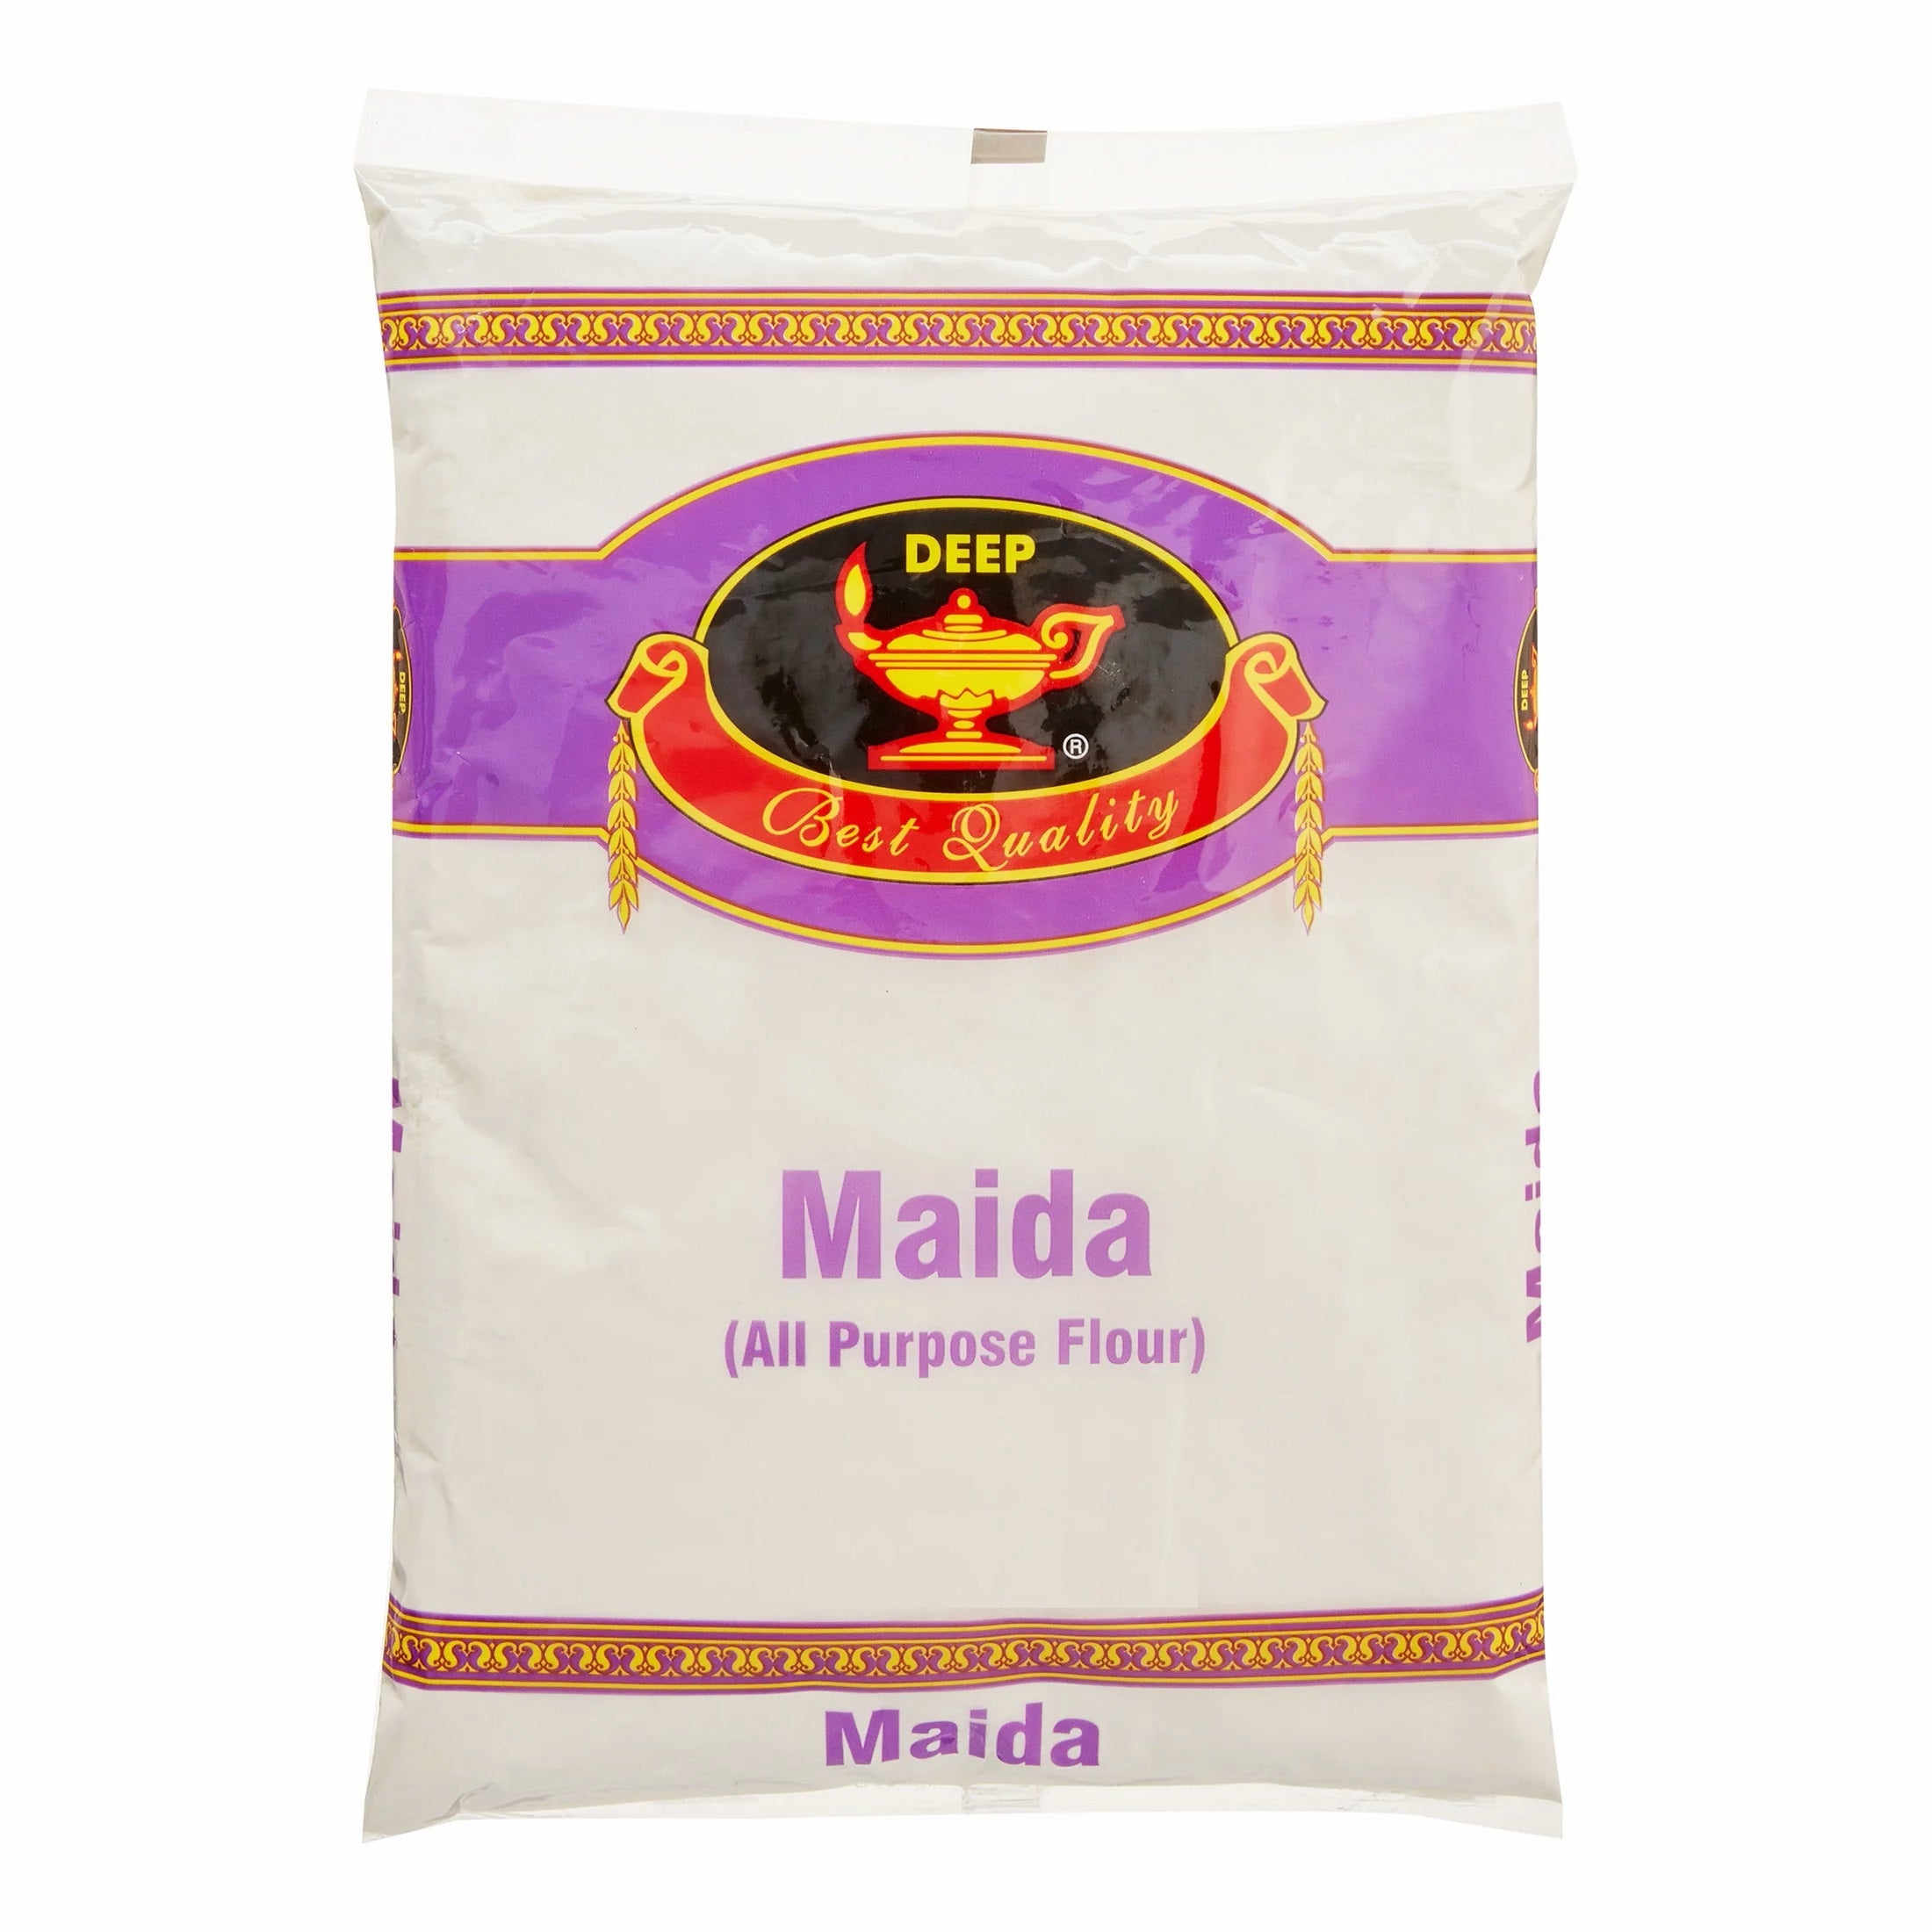 Deep - Maida Flour 2lb